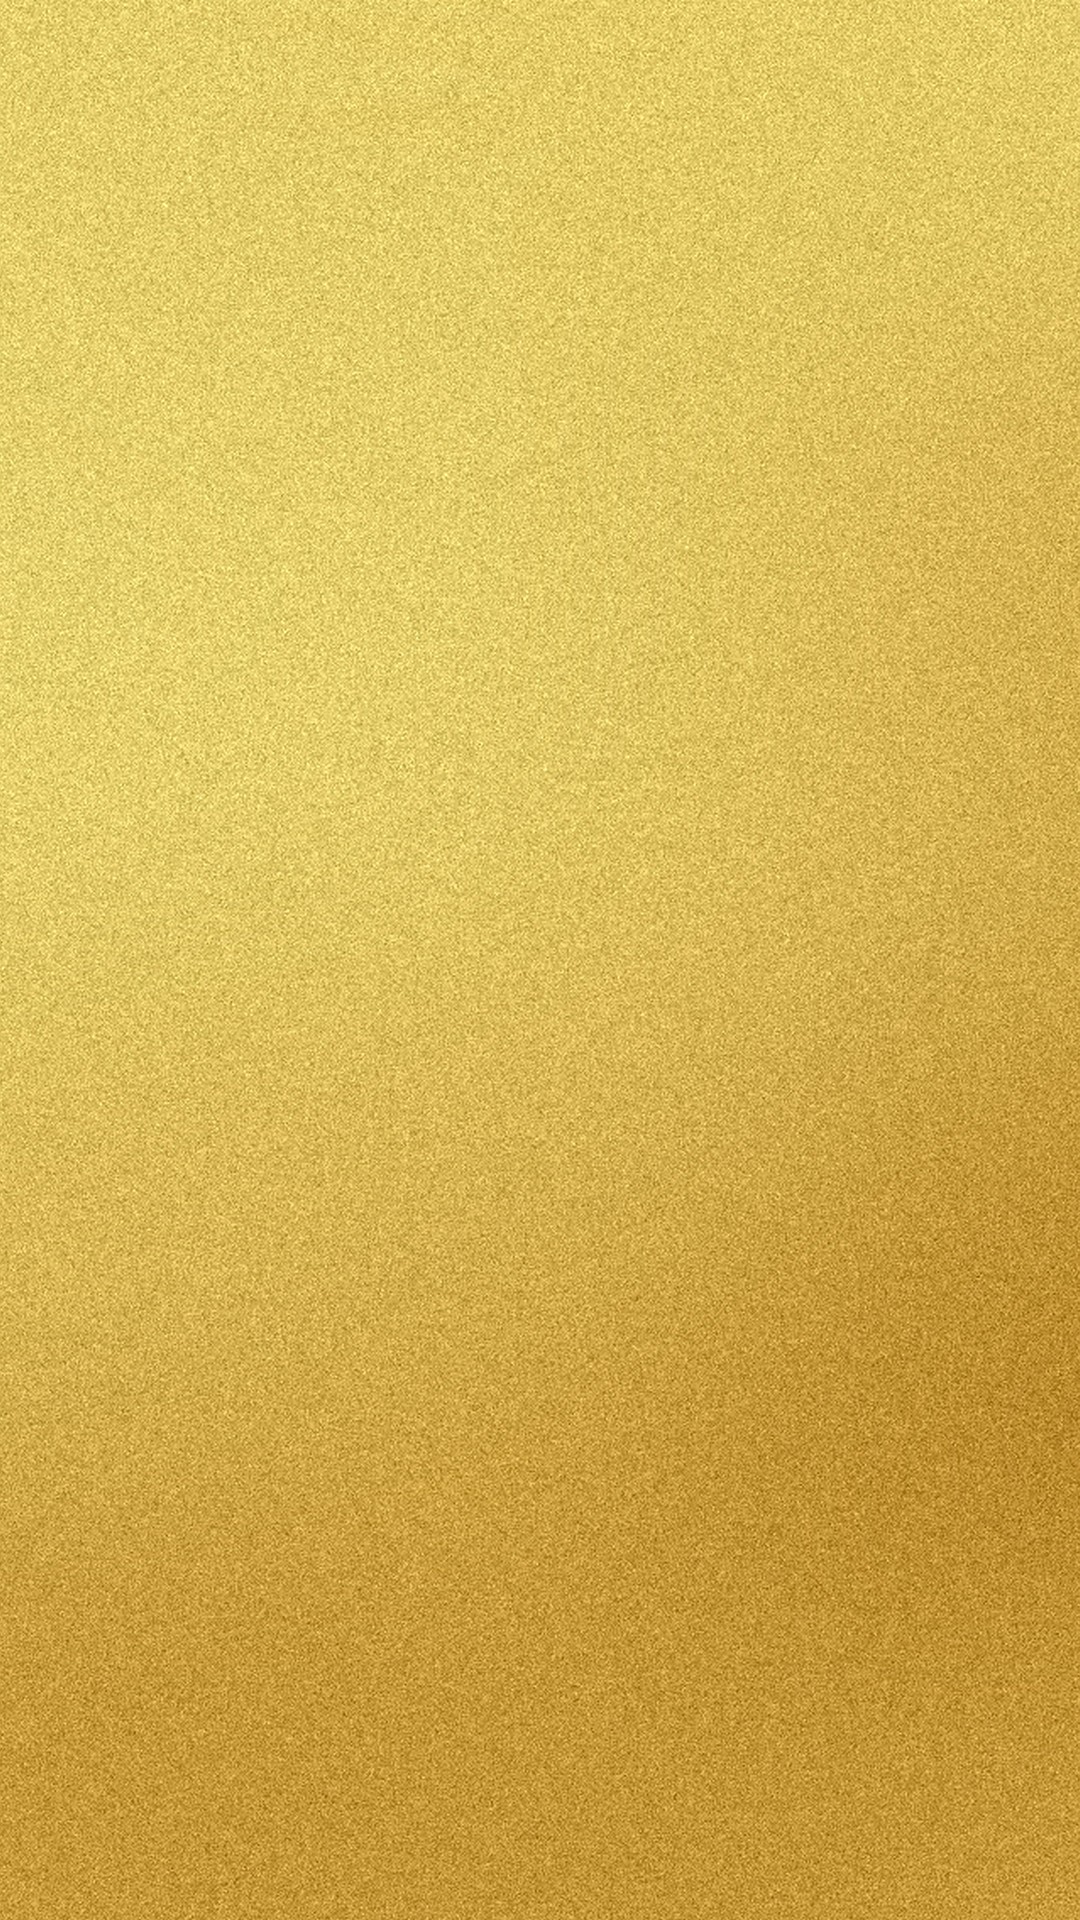 iphone 5s gold wallpaper,yellow,beige